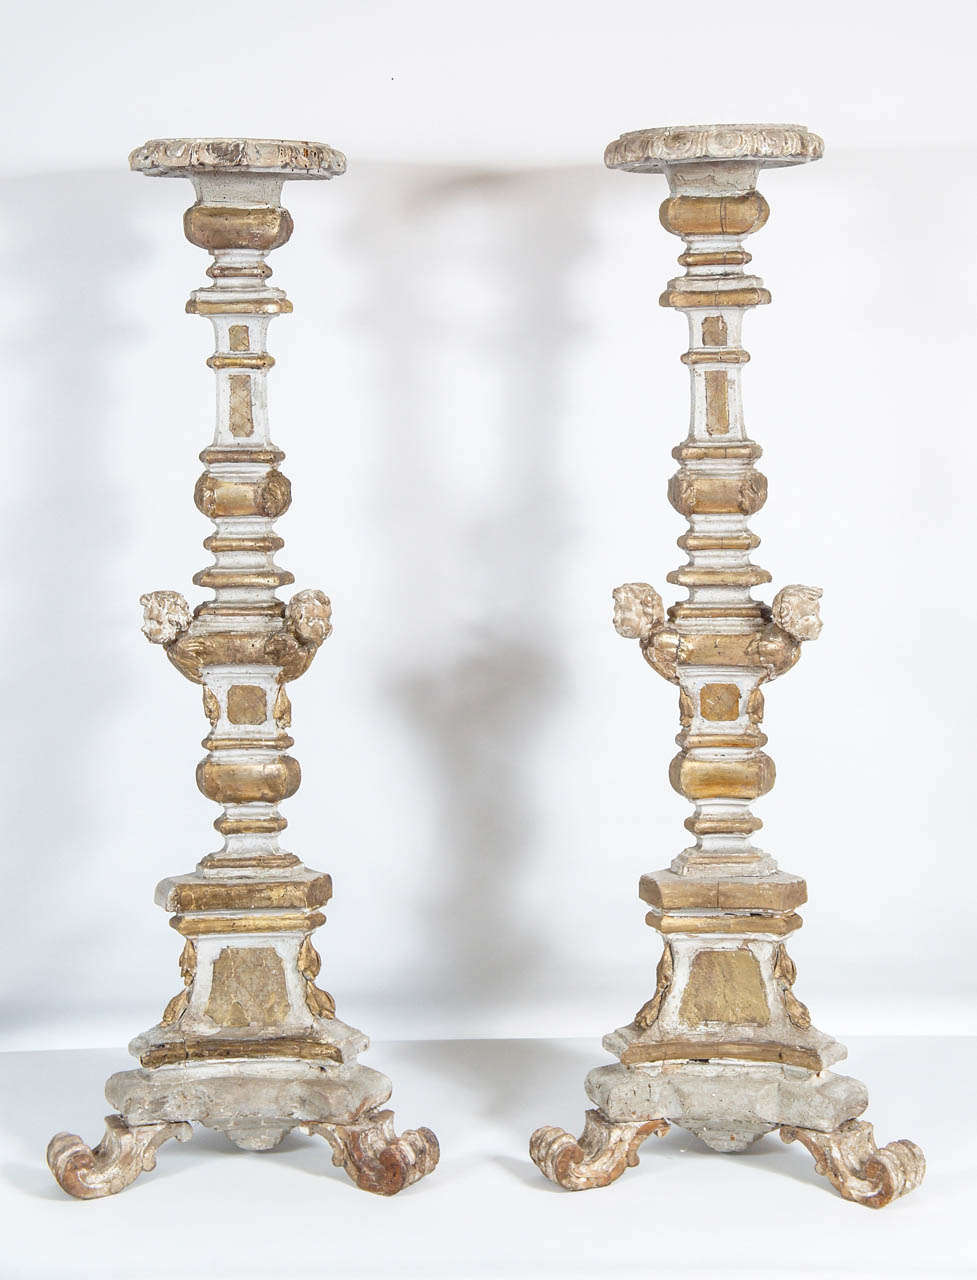 Sobresalientes palos de altar italianos del s. XVIII, de madera tallada y dorada, con remates circulares, decoración de putti aplicada tallada y pies con volutas.  Algunas pérdidas de pintura, reparaciones y diversos daños por